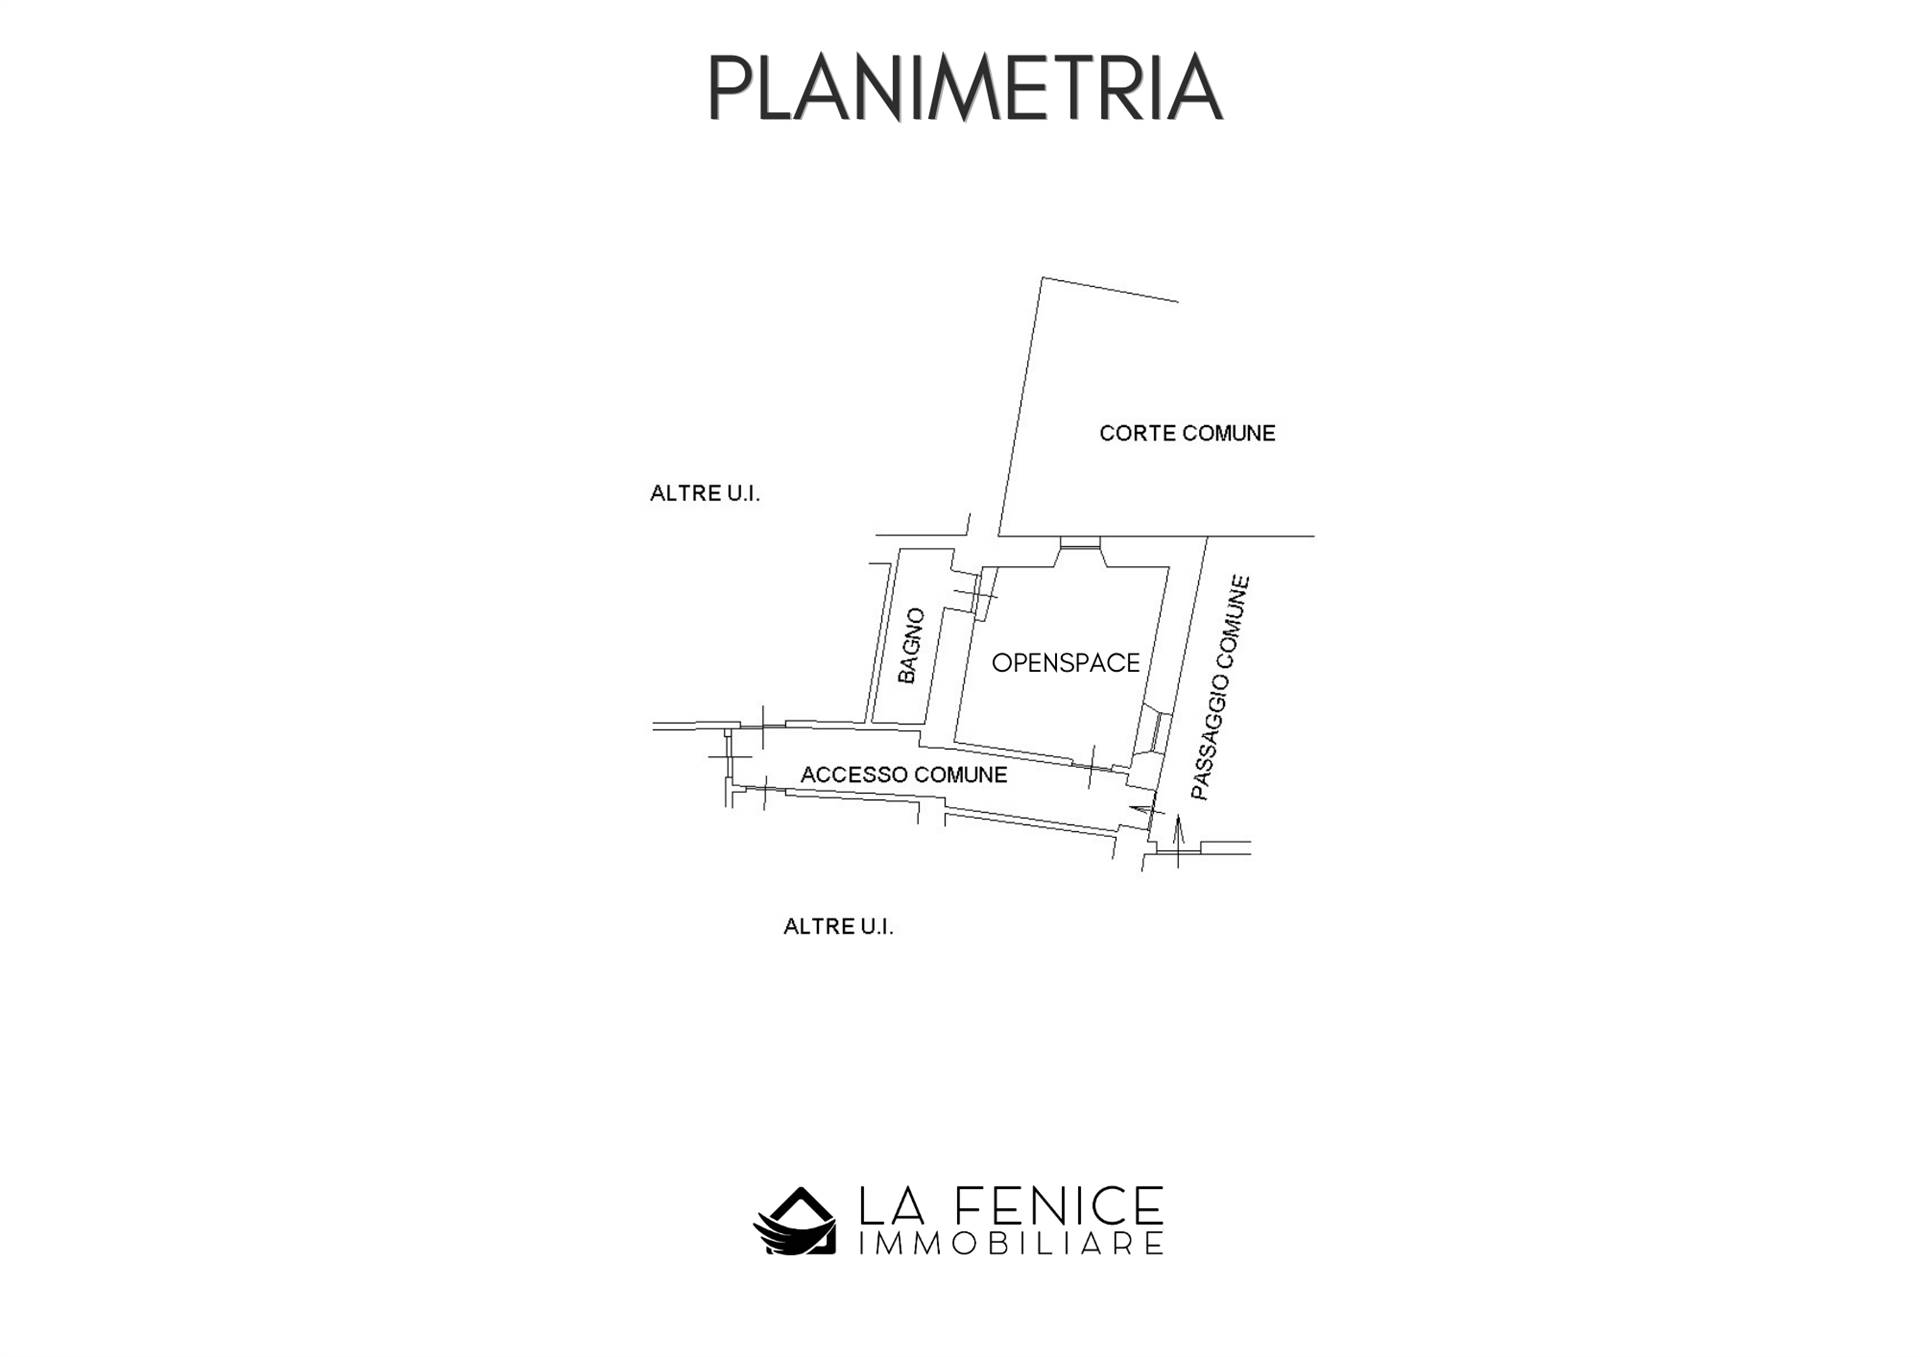 Appartamento a Monterosso al mare con 2 locali di 33 m2 - PLANIMETRIA